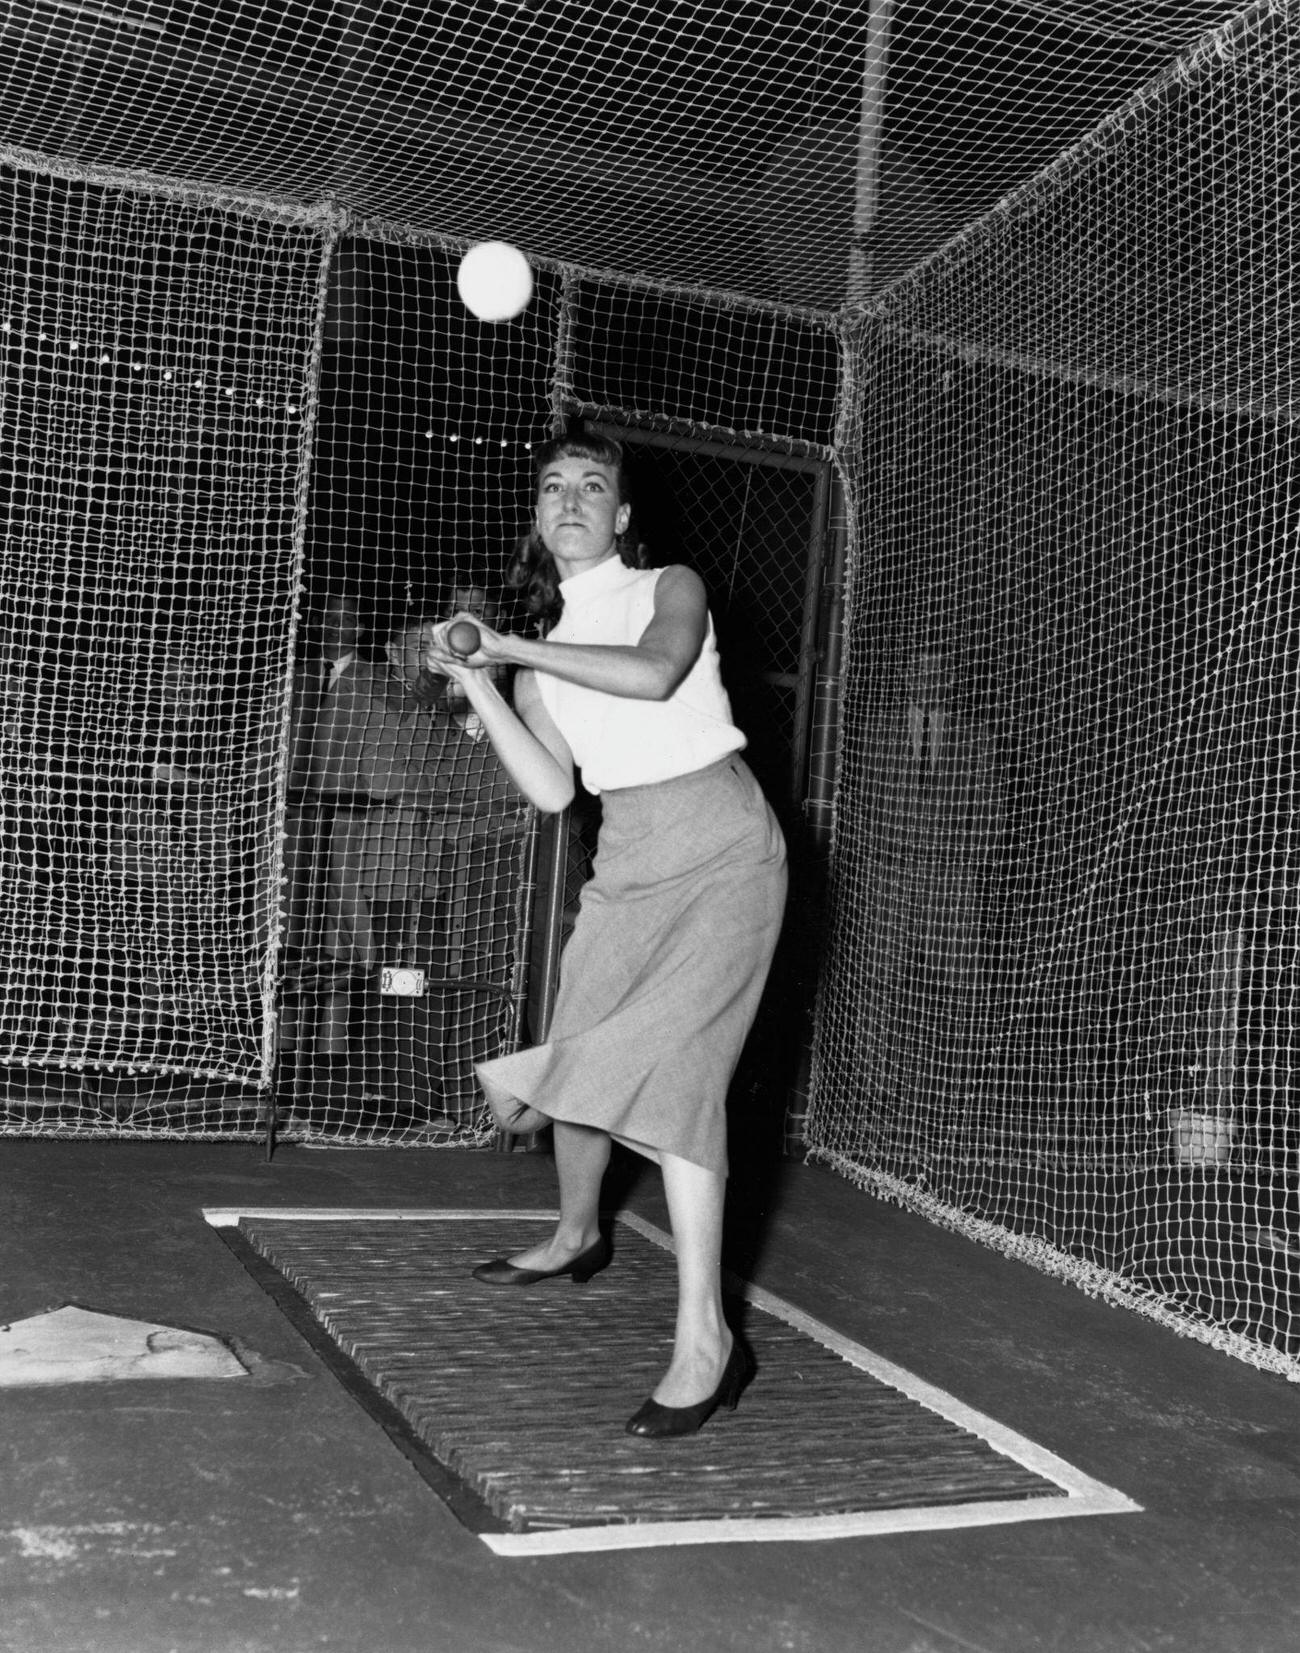 Woman At Bat-A-Way Baseball Range, August 1954